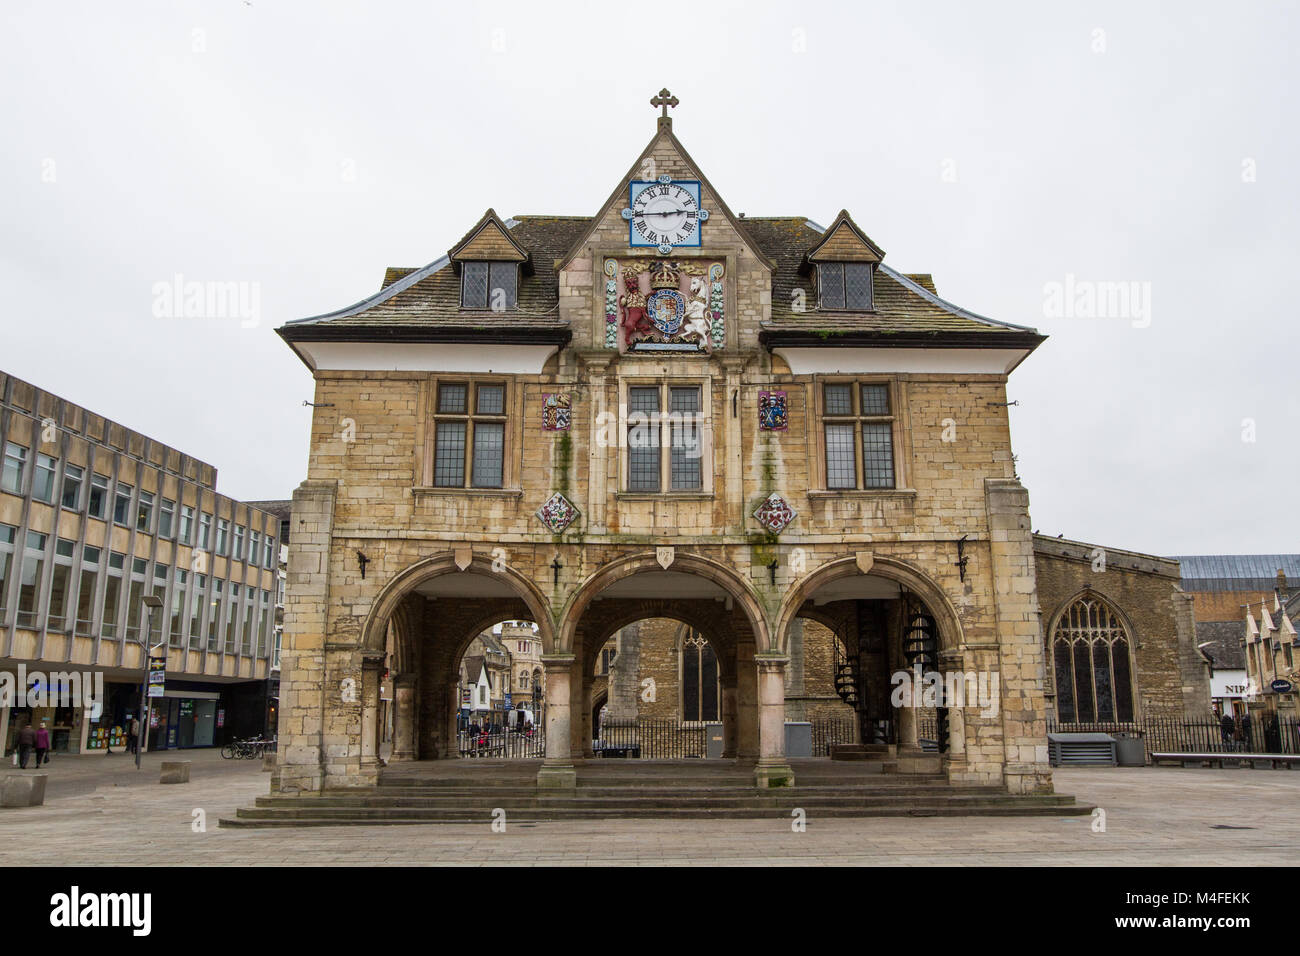 PETERBOROUGH, Regno Unito - 12 febbraio 2018. Peterborough Guildhall è un esempio di architettura storica nel centro della città di Peterborough, Regno Unito. Foto Stock